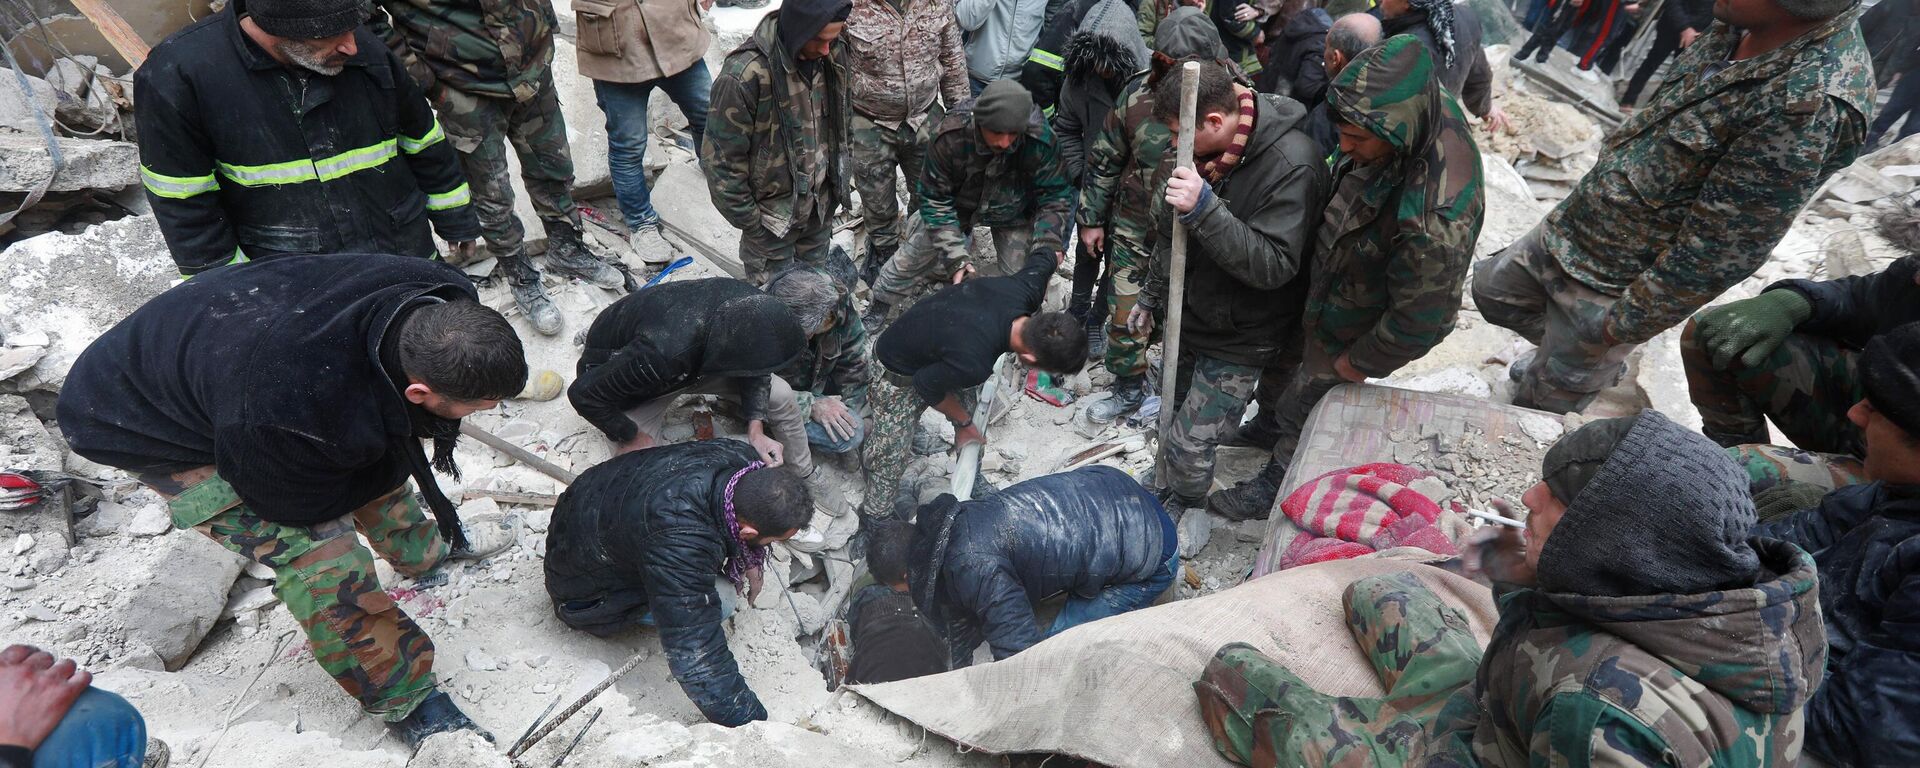 Equipes de resgate sírias procuram por vítimas e sobreviventes debaixo dos escombros de um prédio colapsado após terremoto de magnitude de 7,7, em Aleppo, Síria, 6 de fevereiro de 2023 - Sputnik Brasil, 1920, 06.02.2023